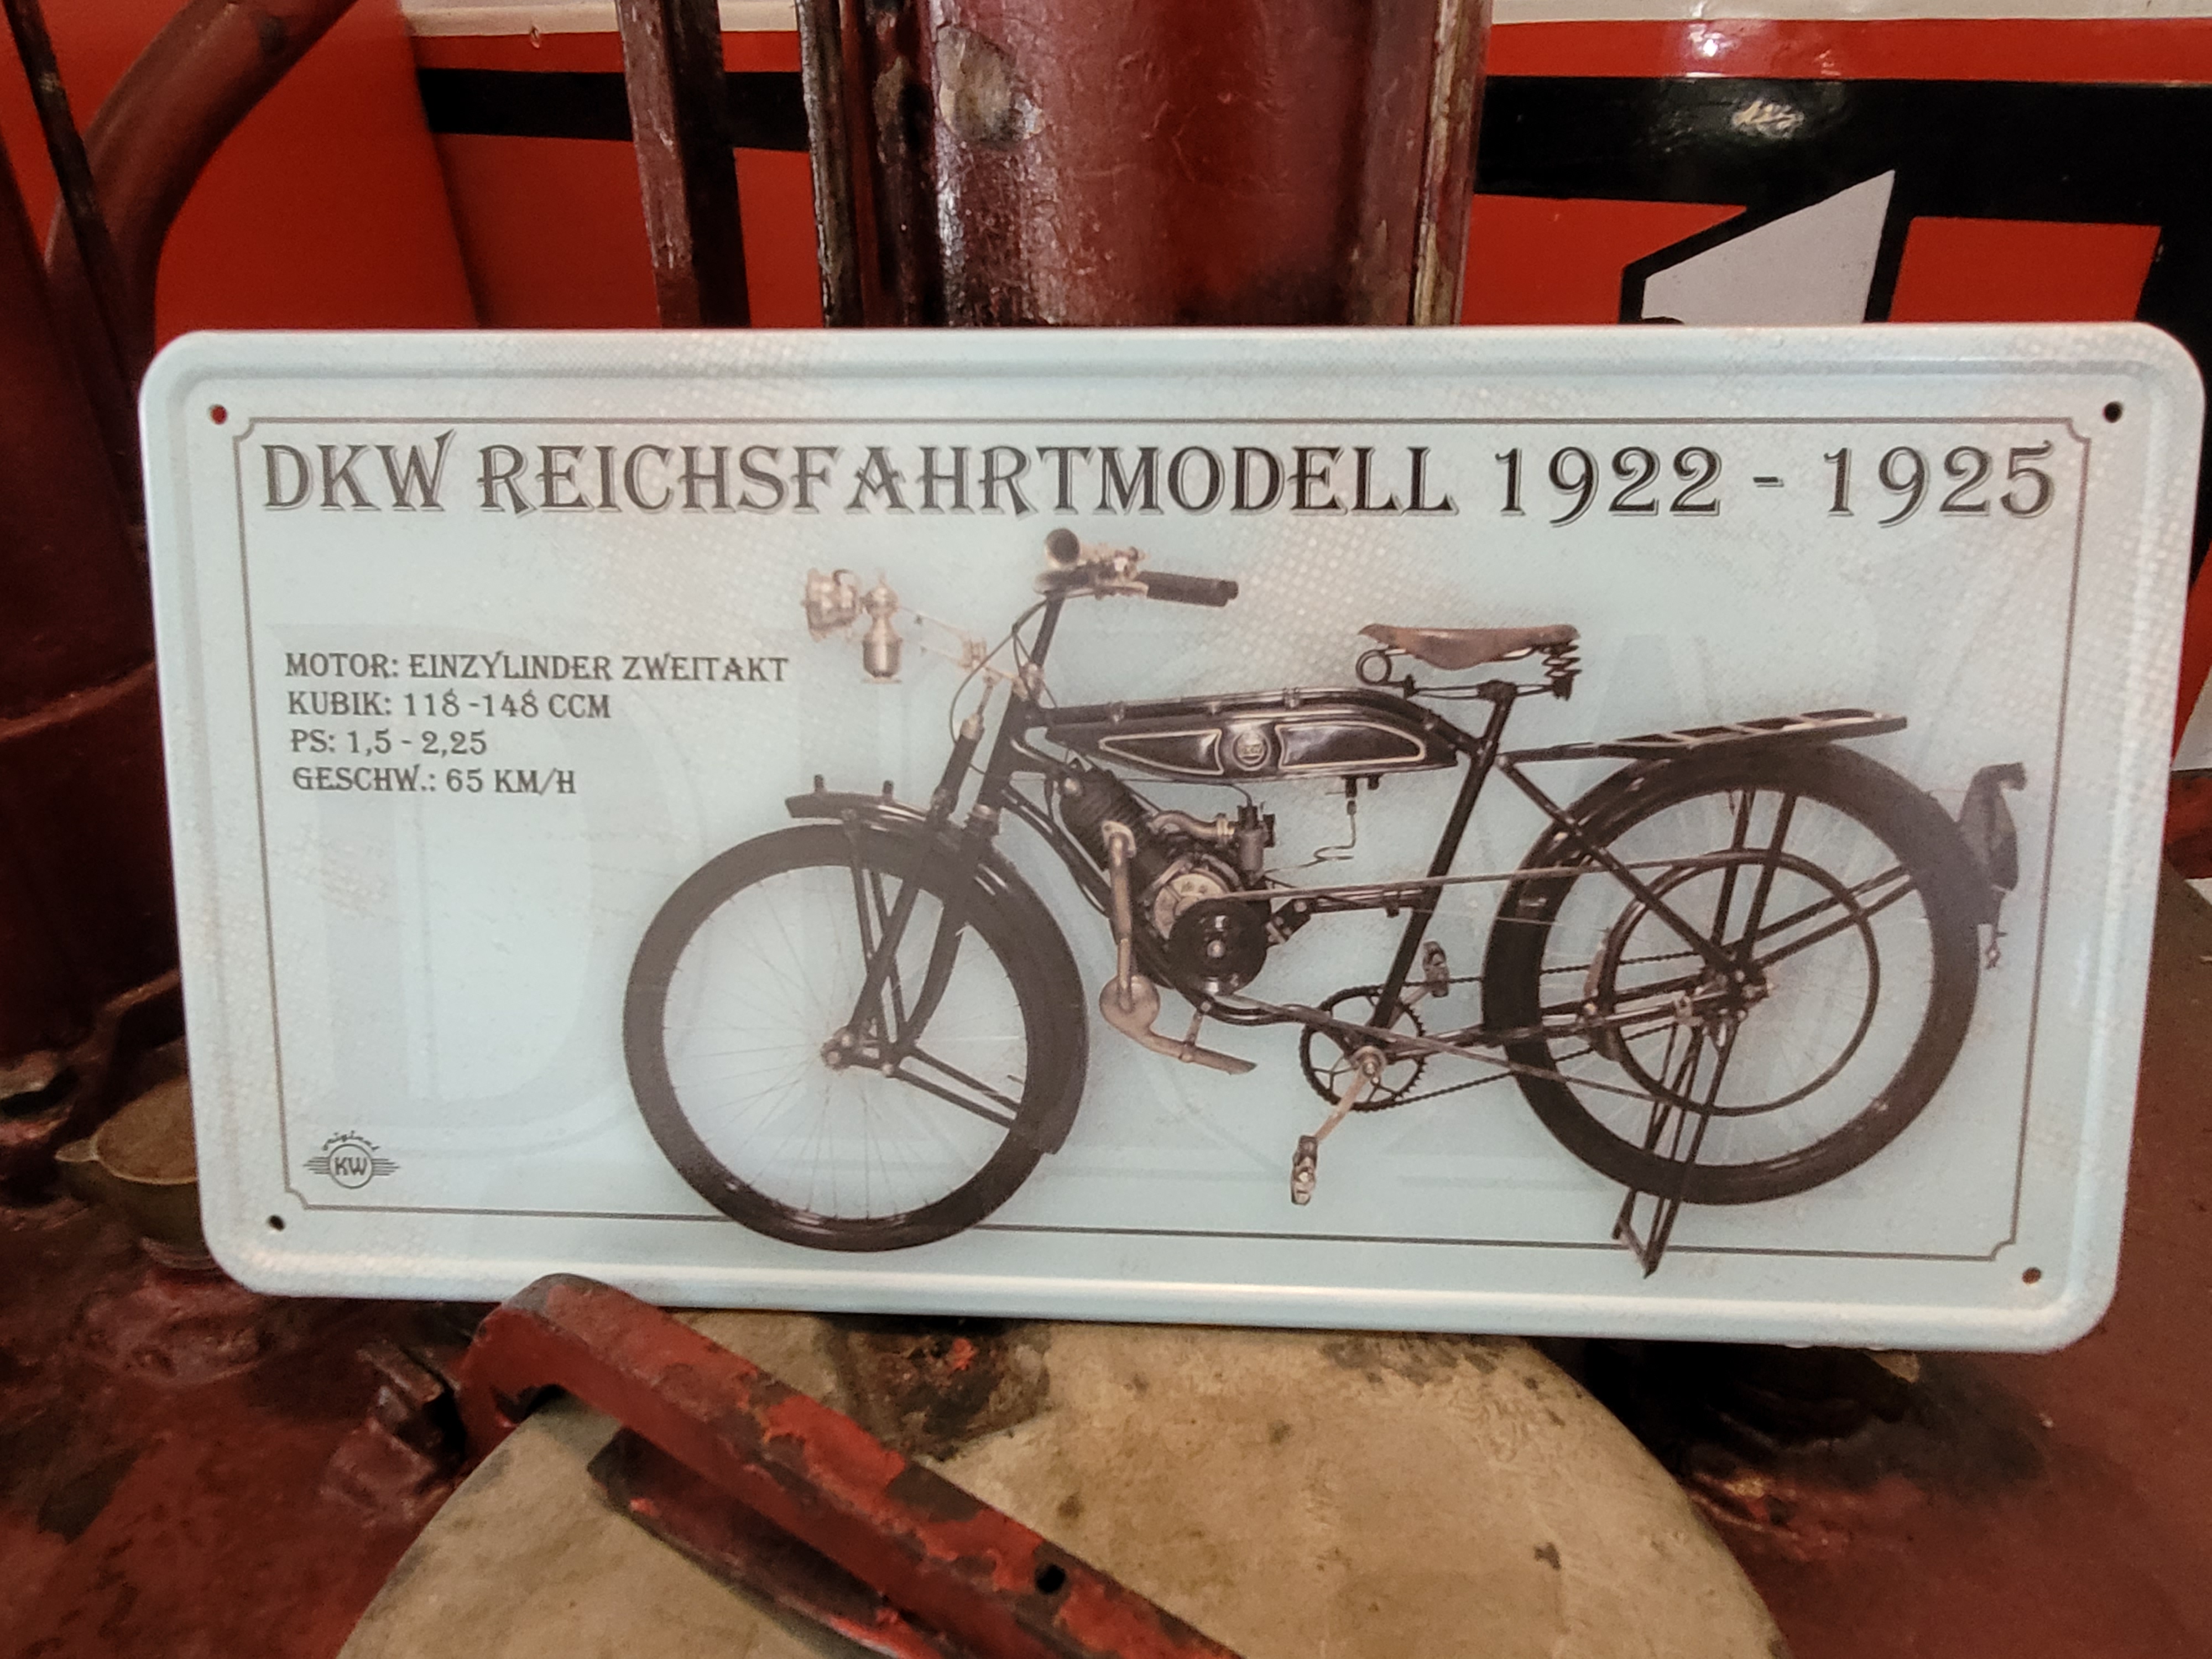 DKW Reichsfahrtmodell 1922-1925